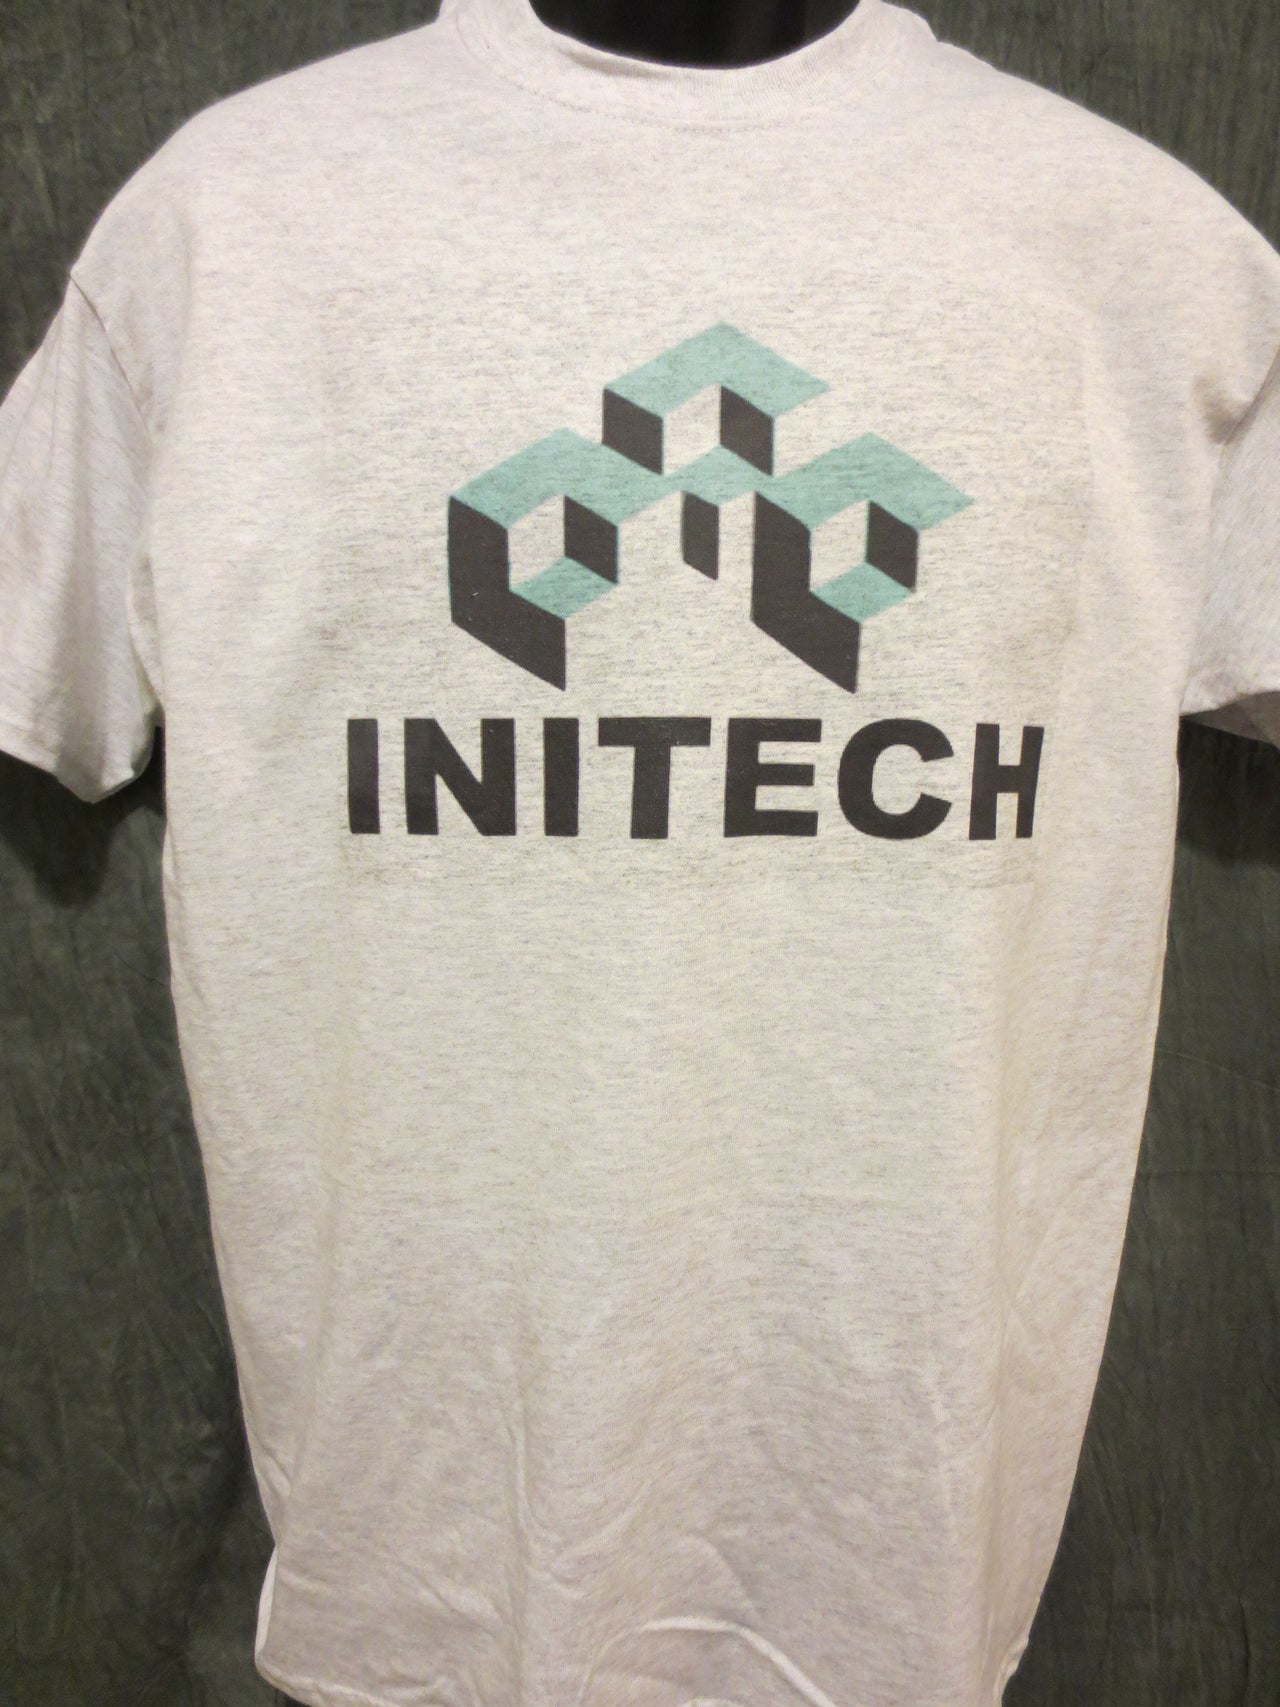 Initech Tshirt and Mug Comb - TshirtNow.net - 5